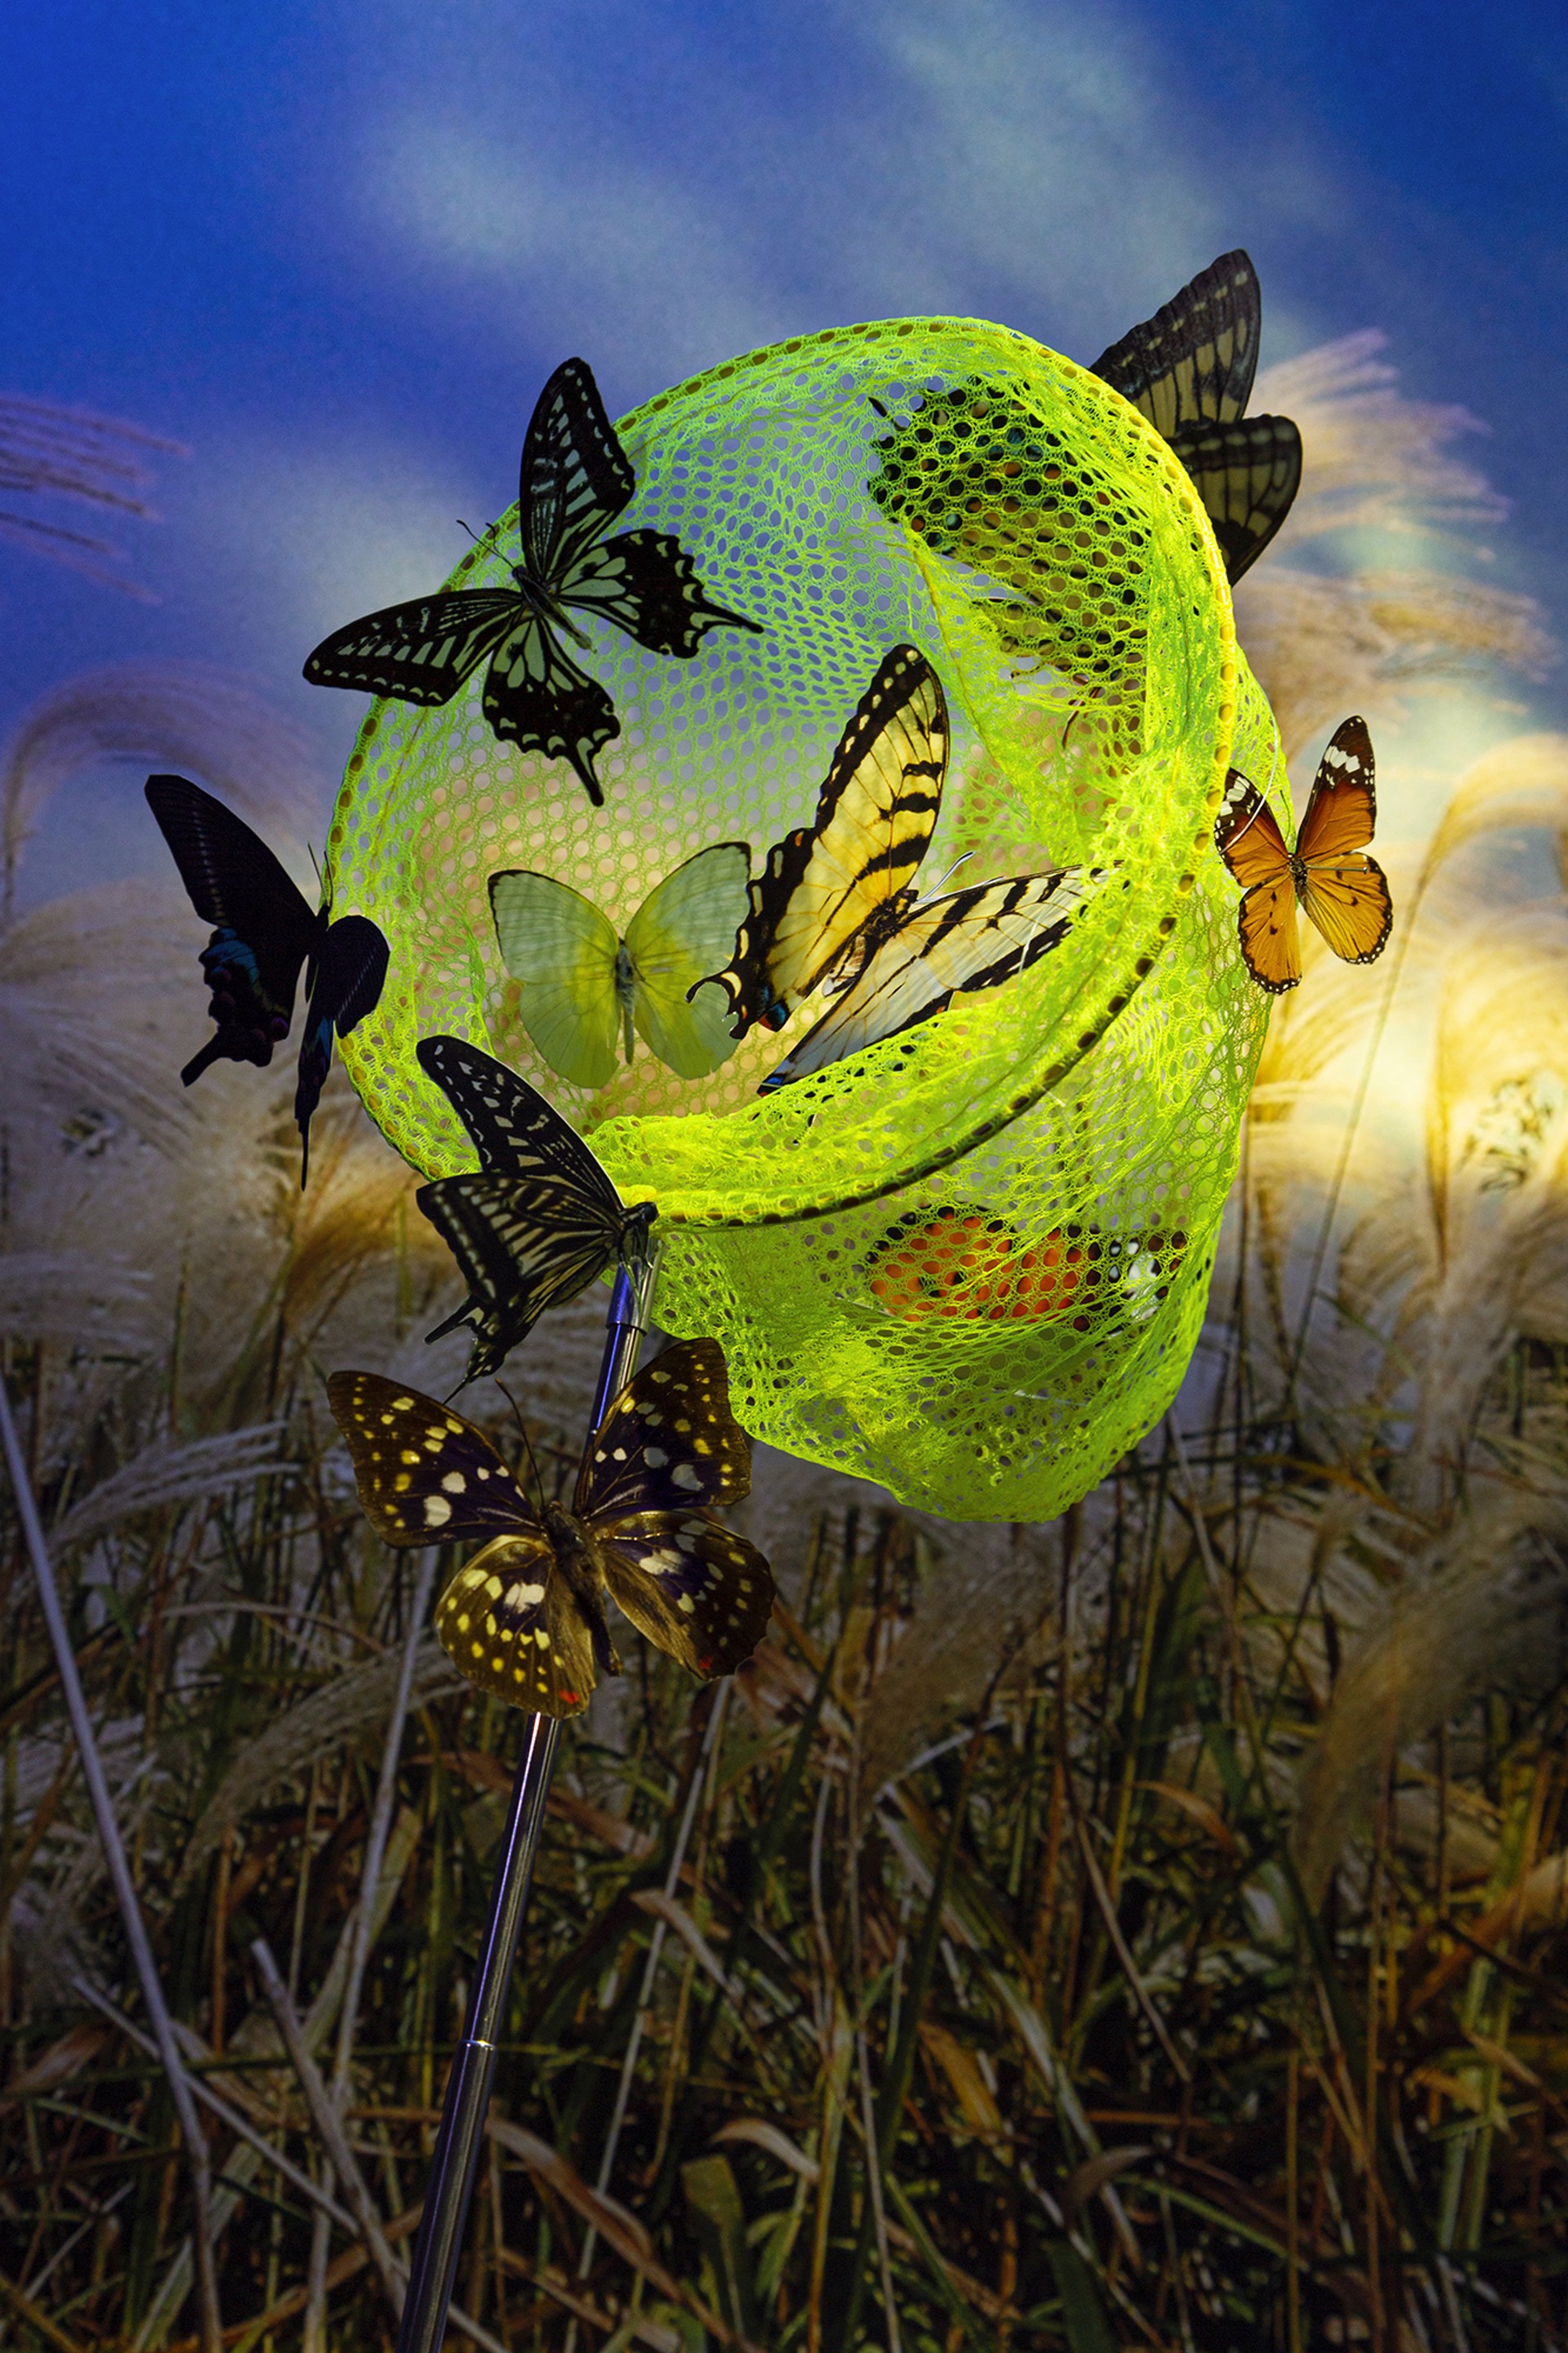 Train My Butterflies by Xiwen Zhu